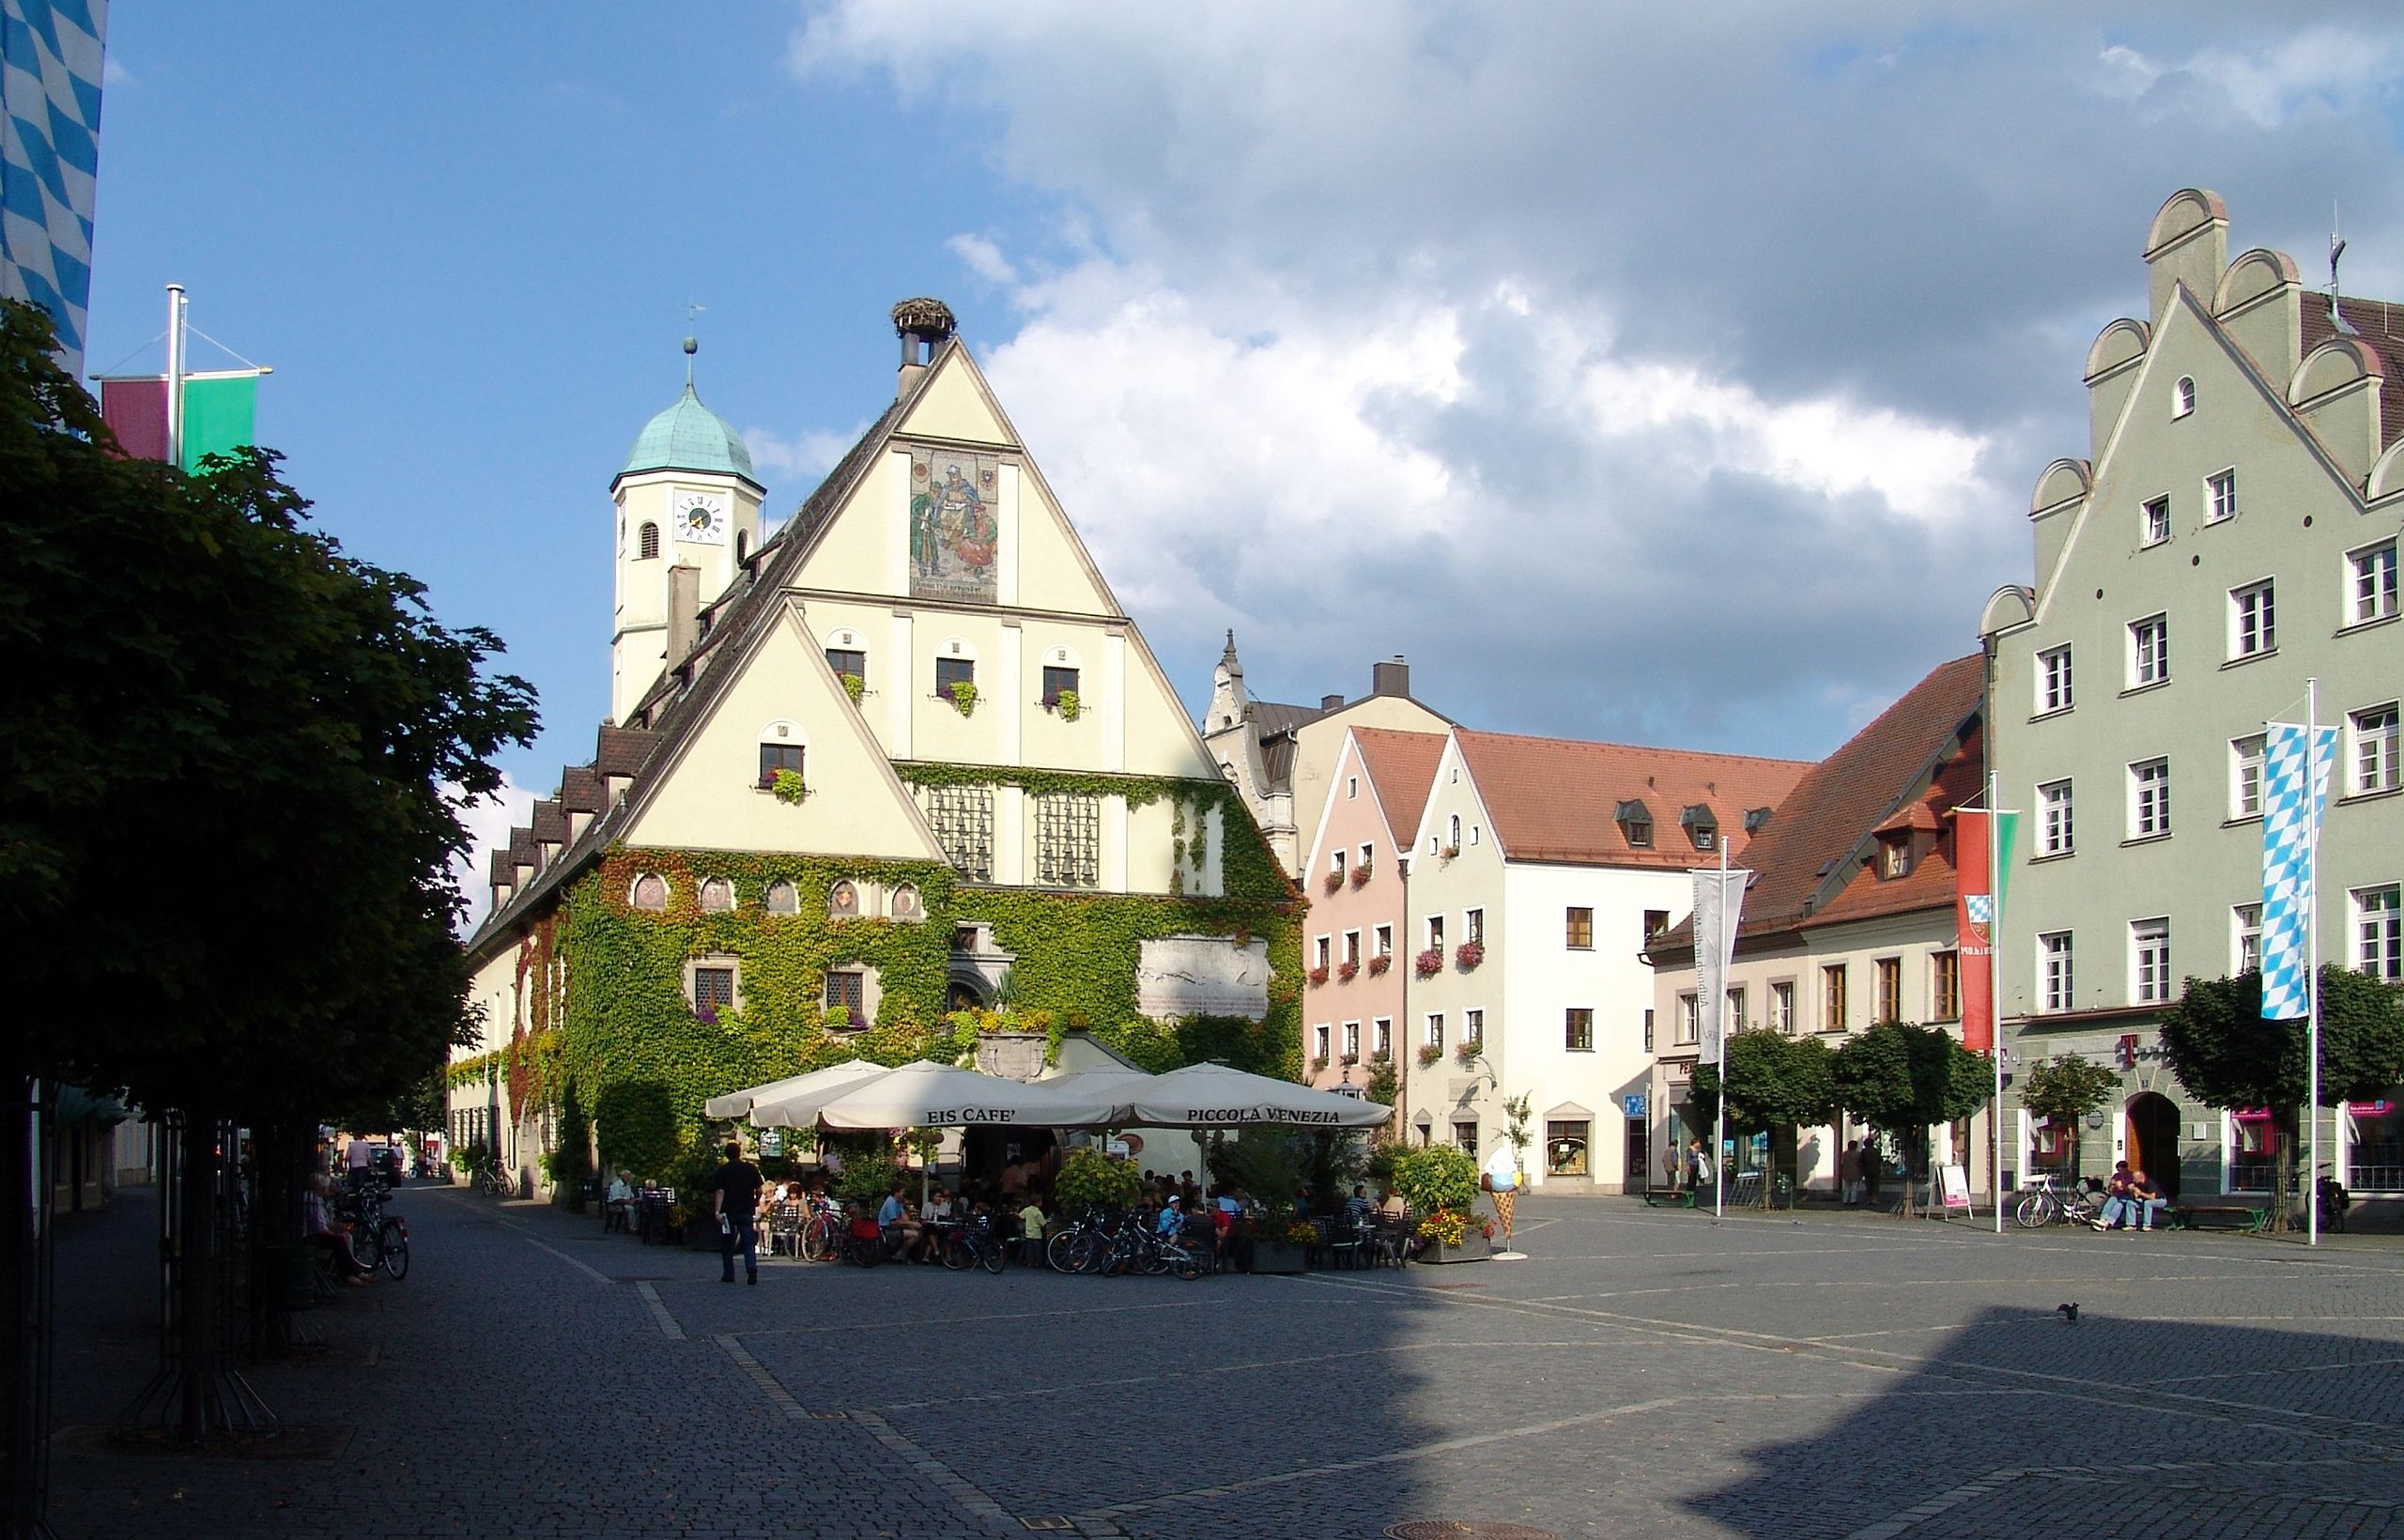 Bild: Der Marktplatz in Weiden. Im Hintergrund ist das alte Rathaus in Weiden zu sehen.